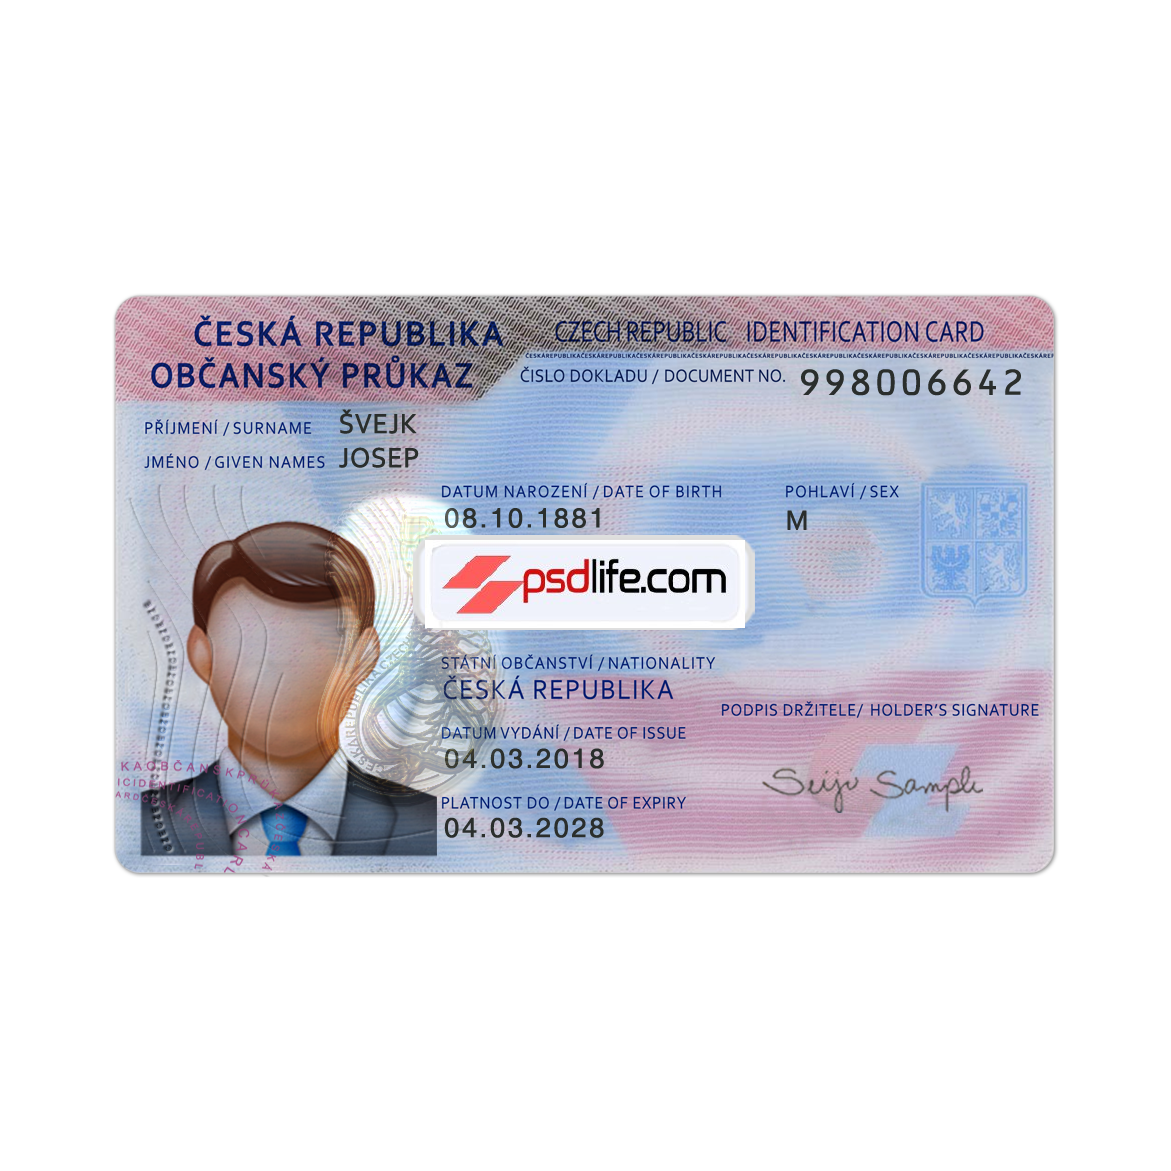 Czech Republic ID card psd template full editabale | Czech Republic id card Template photoshop use for | ID Card Number Czech Republic | Česká republika falešná identifikační karta Psd šablona upravitelná